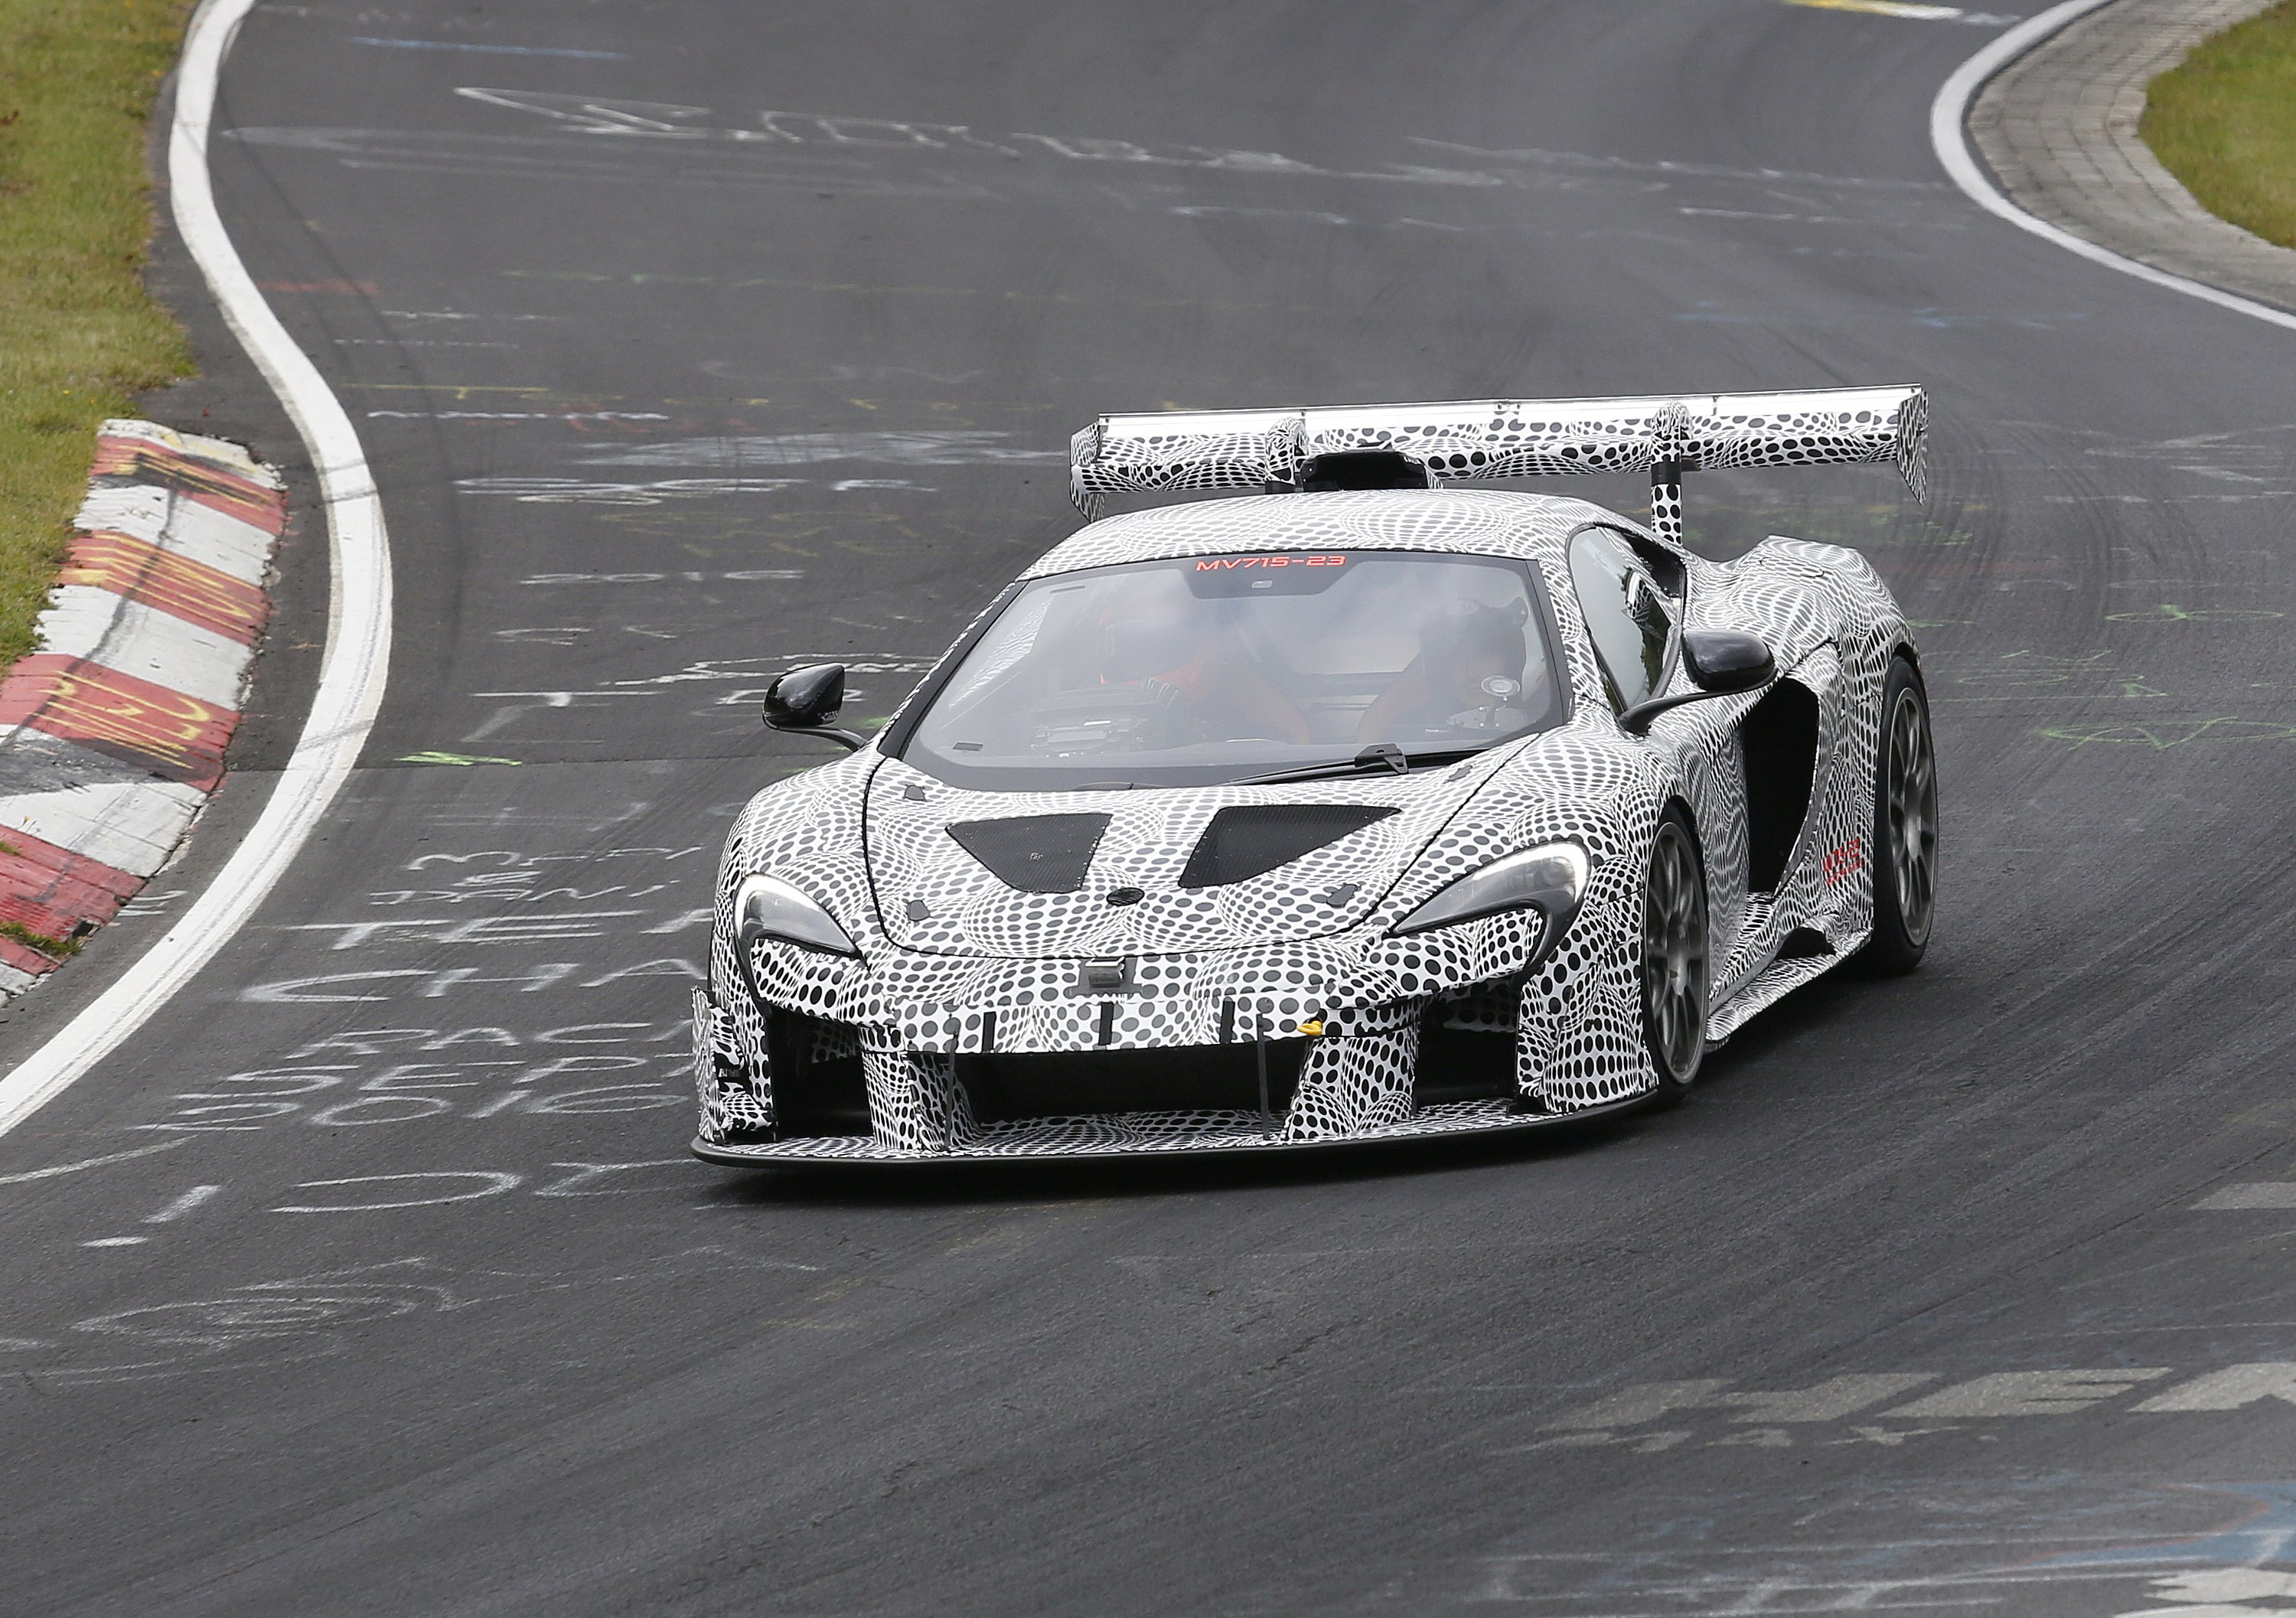 McLaren porta in pista e su strada un nuovo prototipo 